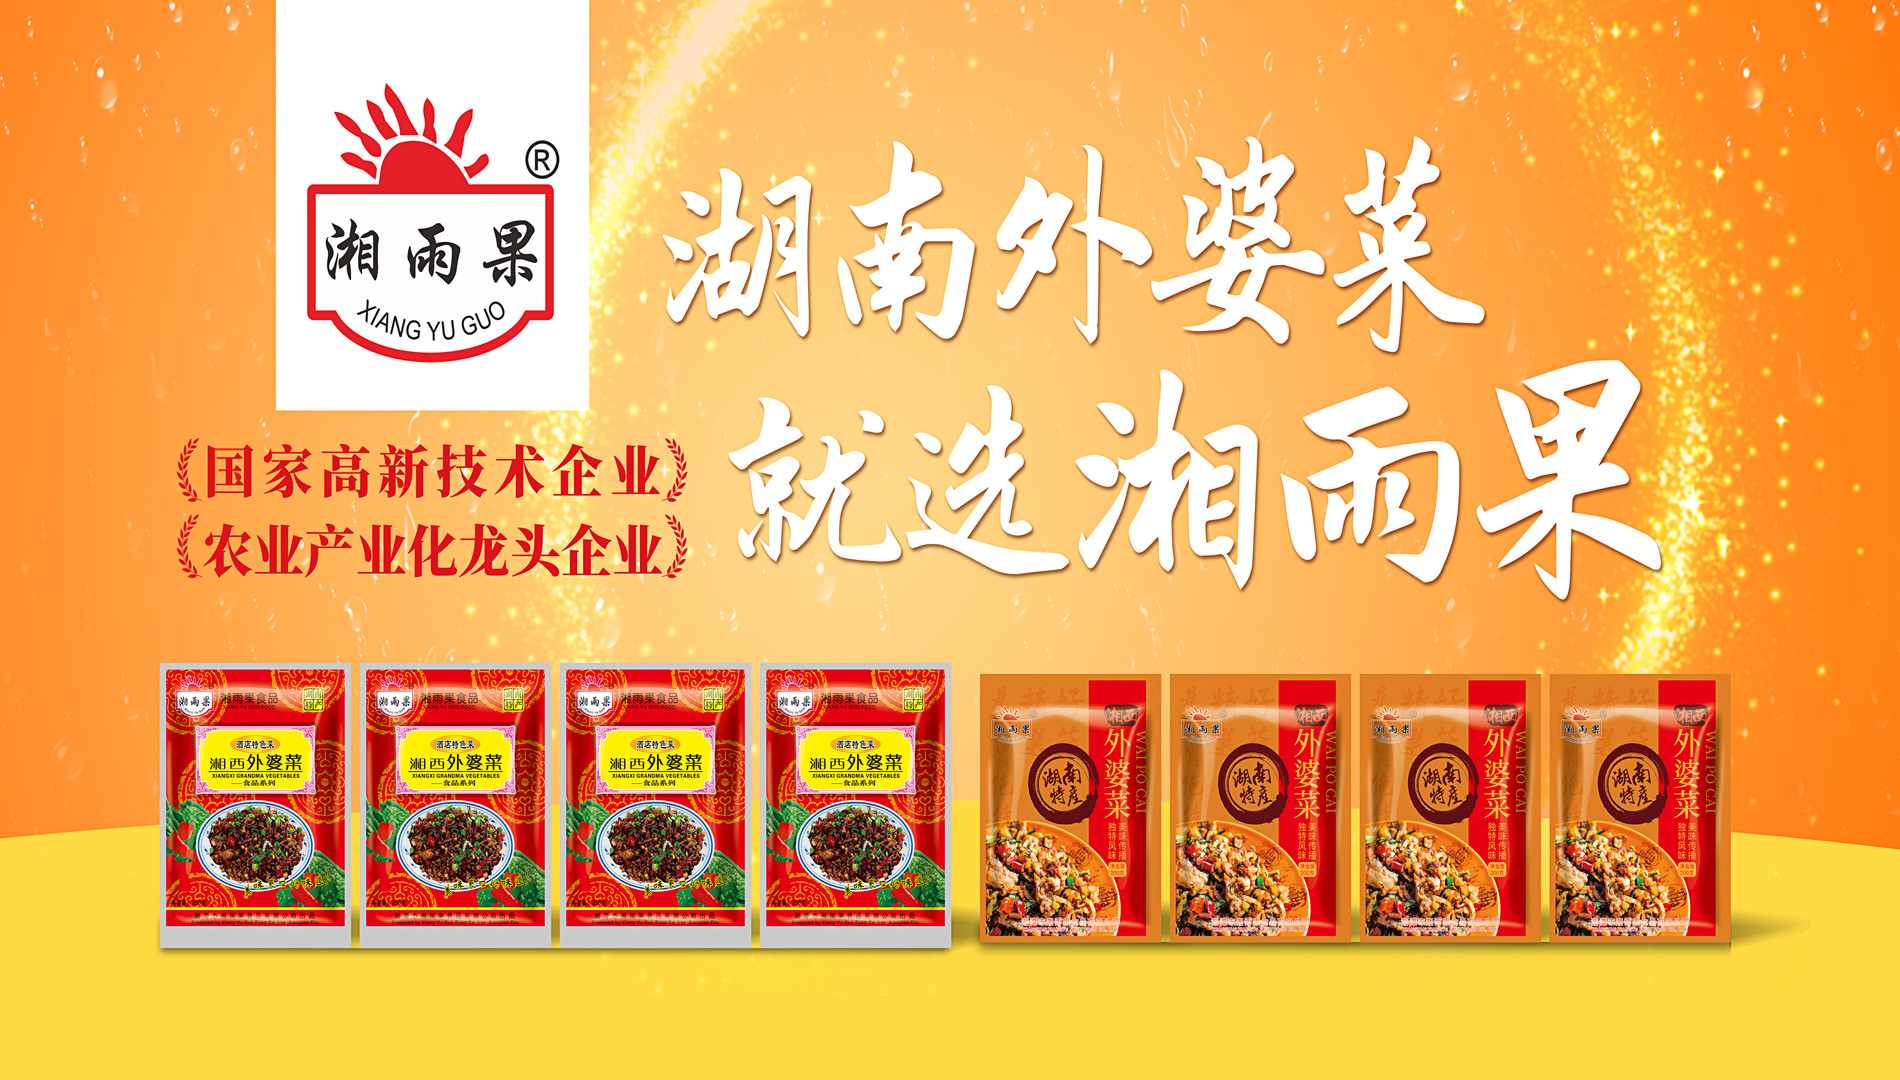 Xiang Yu Guo Food—Orinasa benchmark amin'ny indostrian'ny lovia efa vita